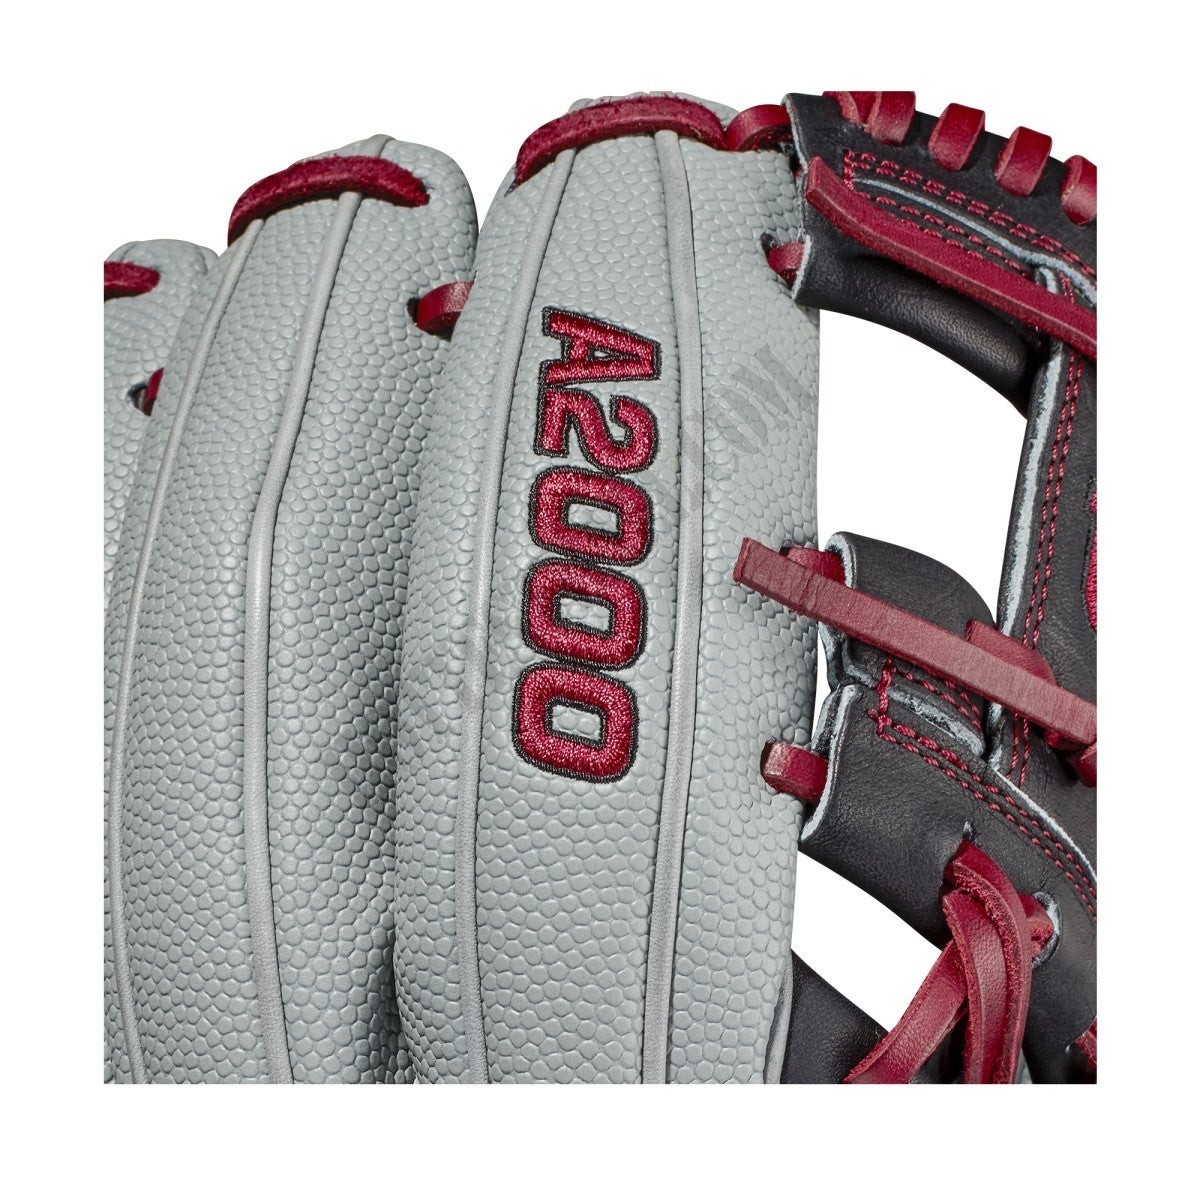 2021 A2000 DP15SS 11.5" Infield Baseball Glove ● Wilson Promotions - -6